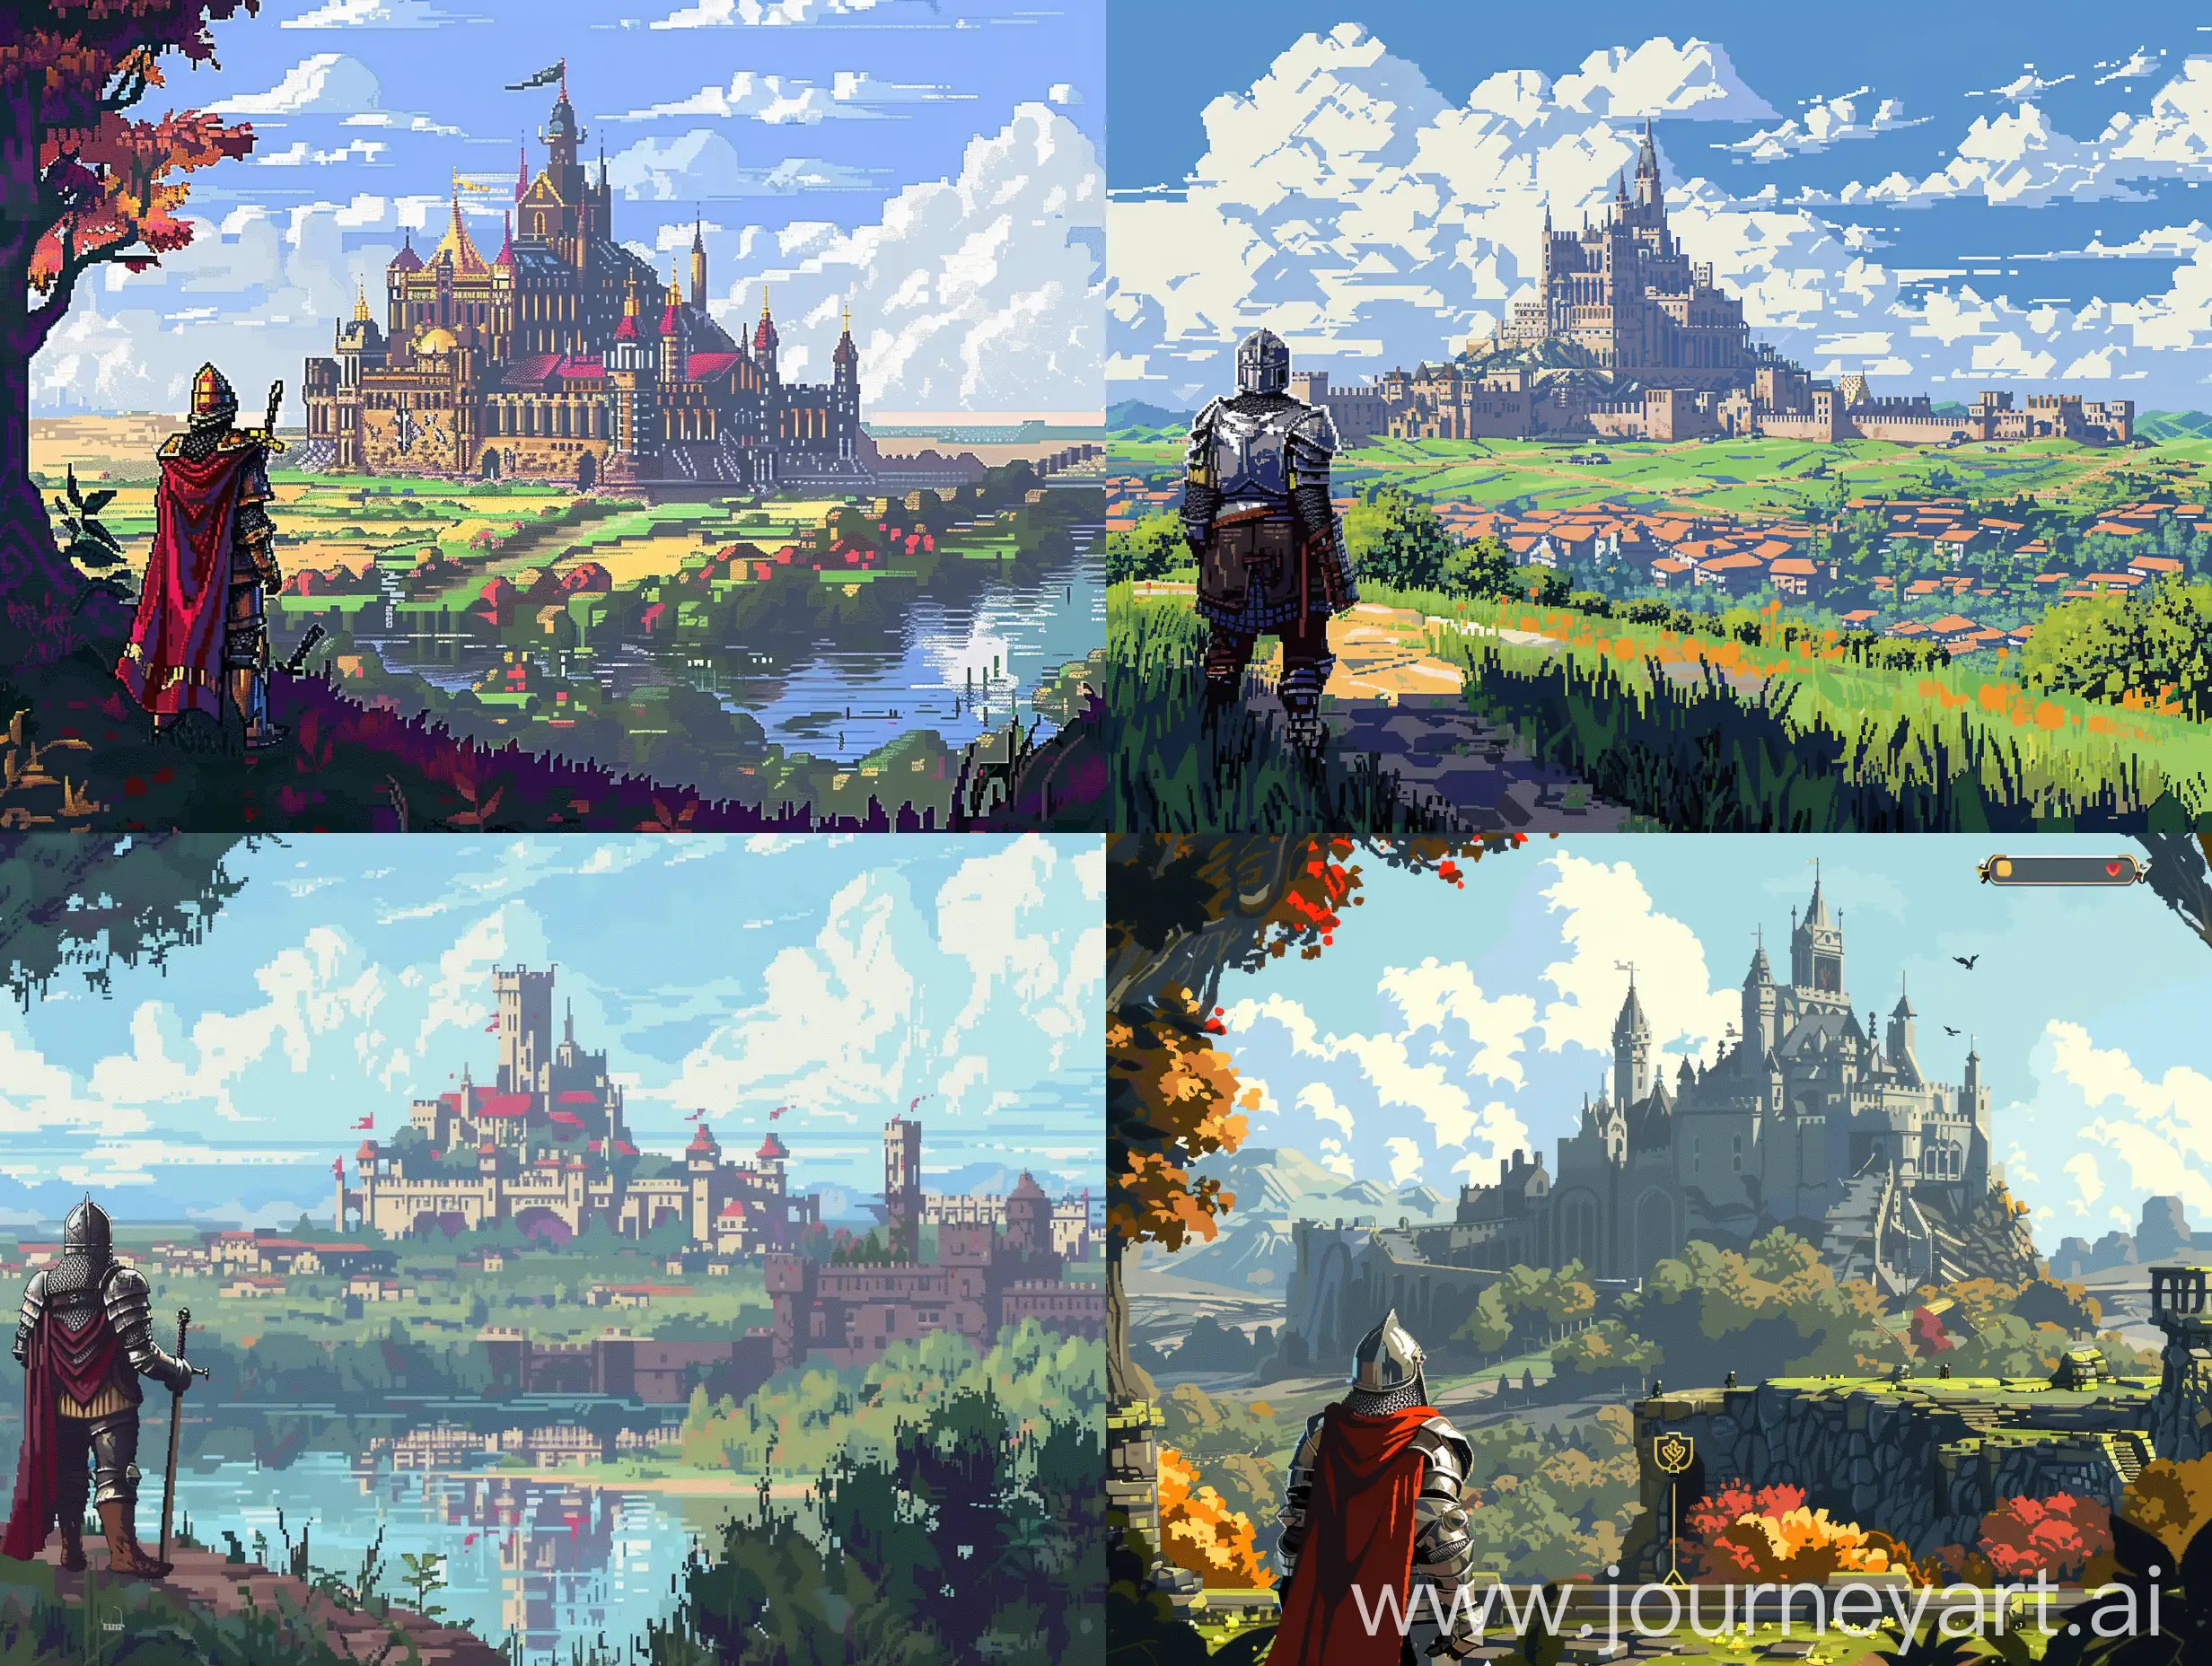 Пиксельная игра на телефон, кат-сцена с далёким огромным замком и смотрящим на него рыцарем